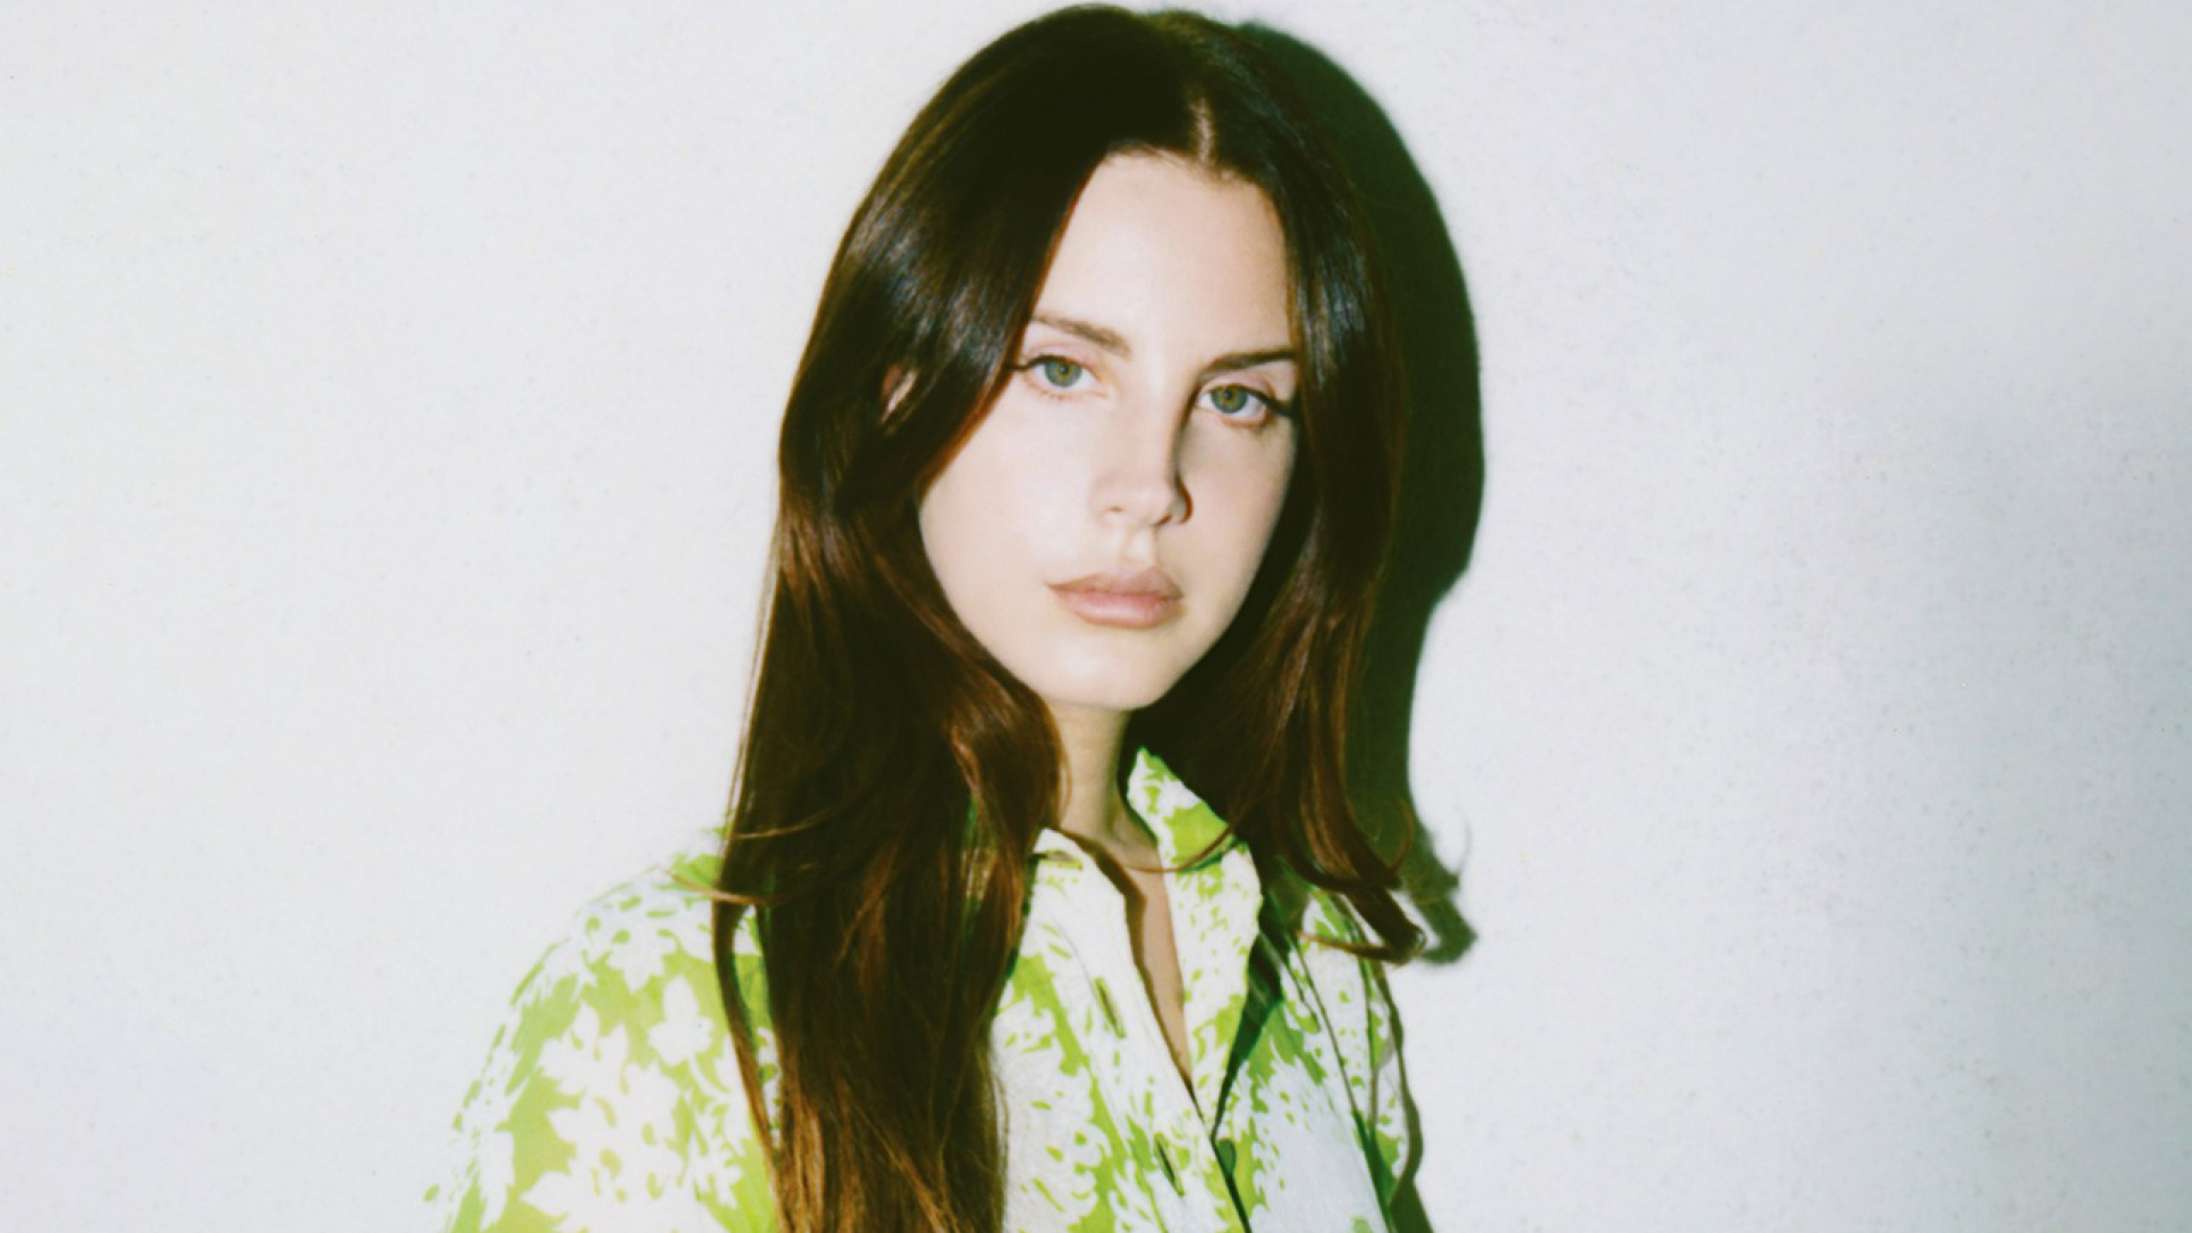 Efter utallige kontroverser: Lana Del Rey vinker farvel til sociale medier